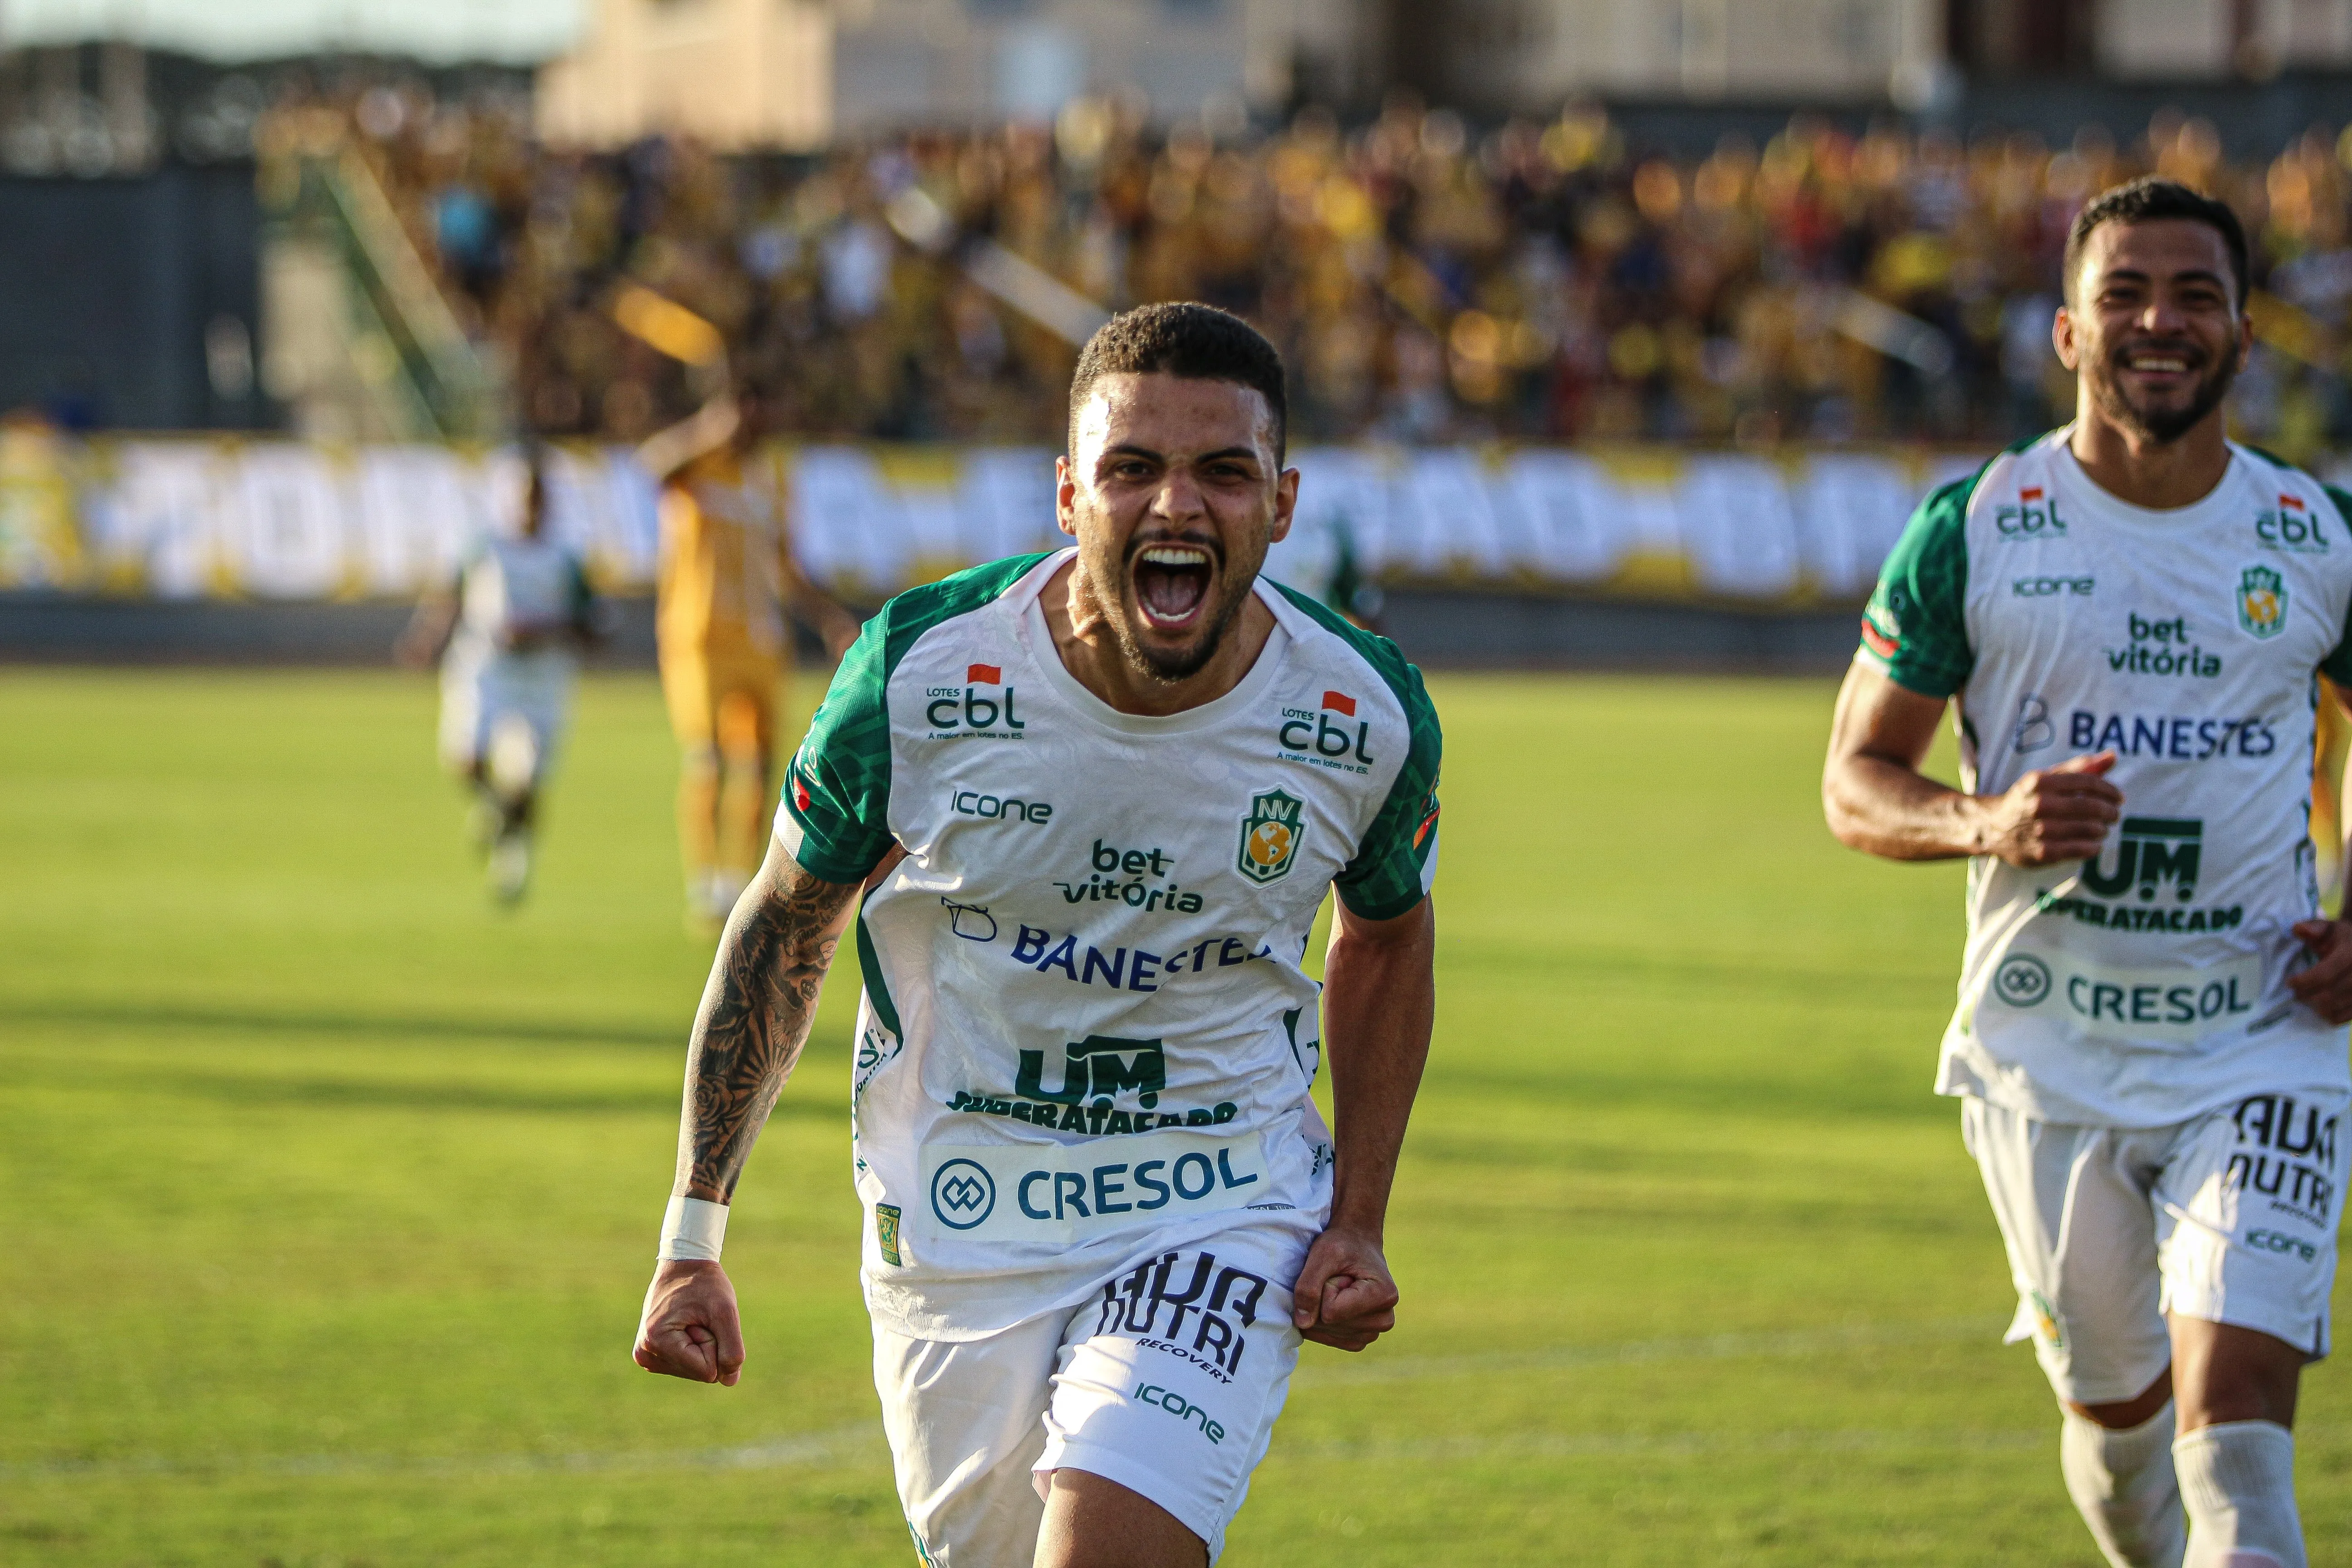 Odilávio comemora o gol marcado no empate em 1 a 1 contra o Brasiliense, que classificou o Nova Venécia à próxima fase